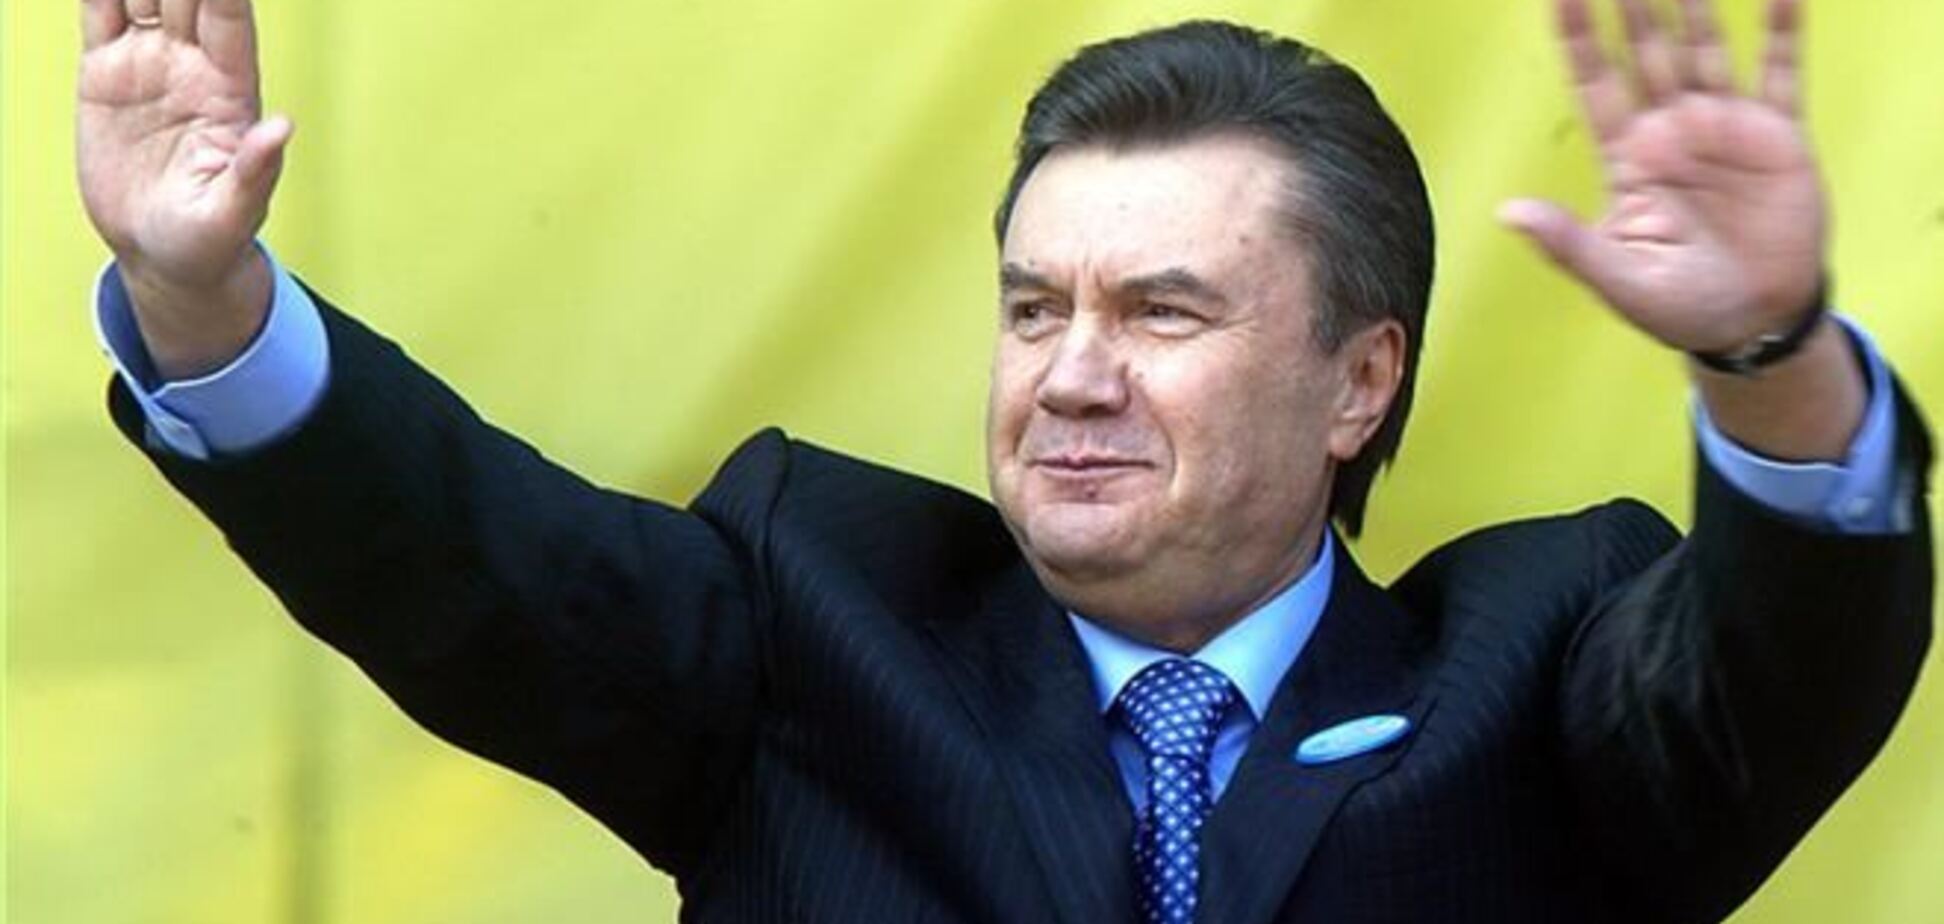 Эксперт: заявление Януковича о президенстве не имеет под собой юридических оснований